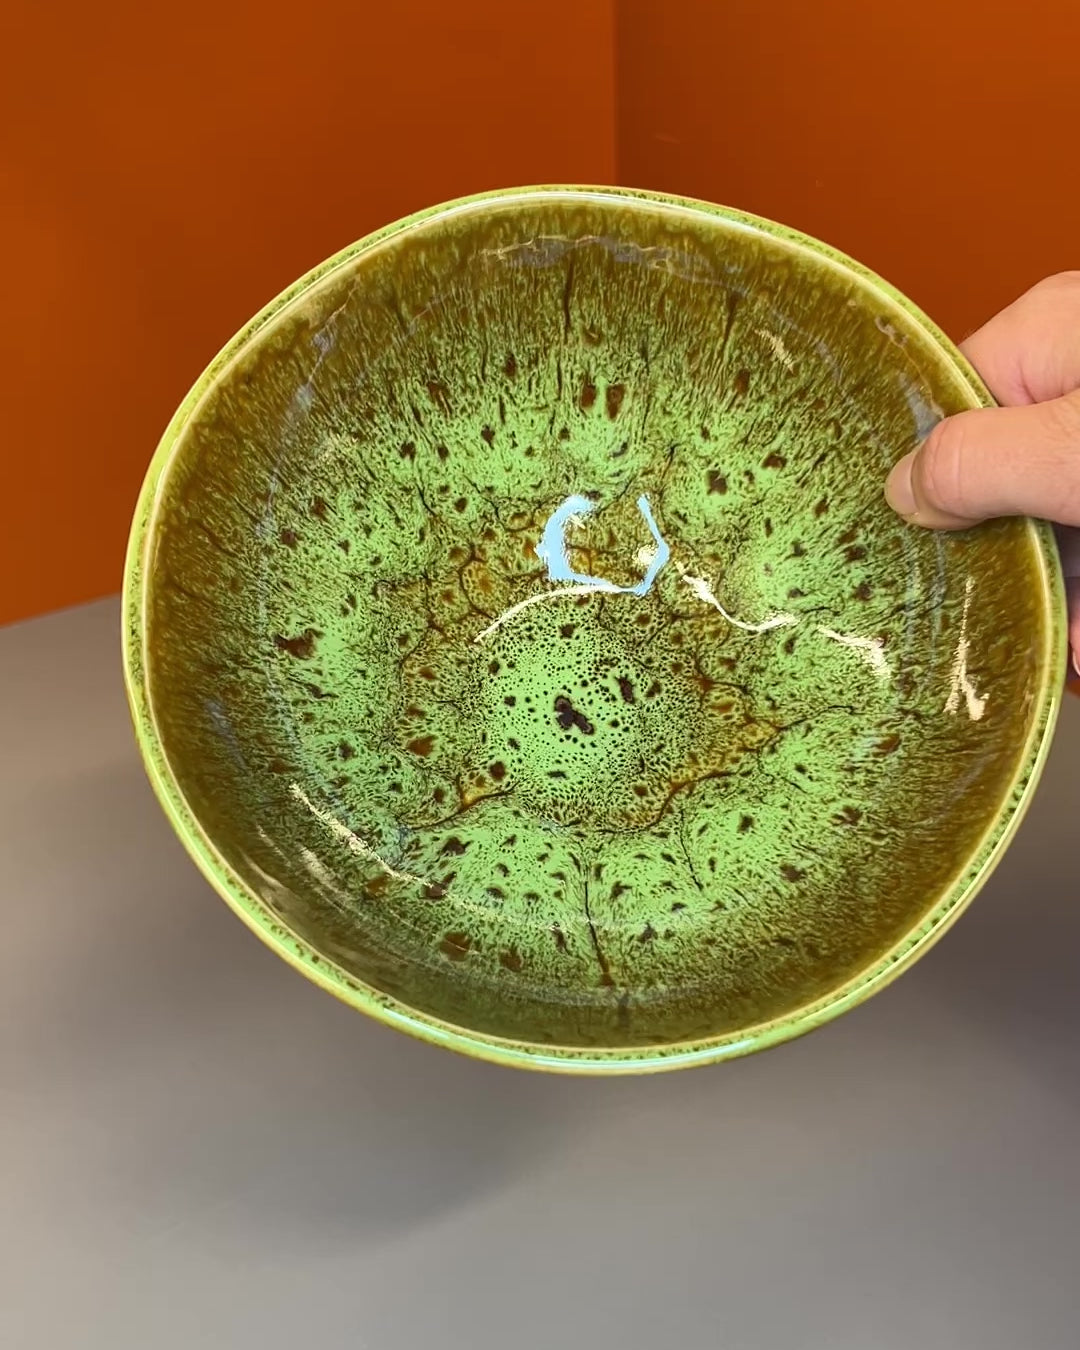 Stor Keramik Skål i Grøn